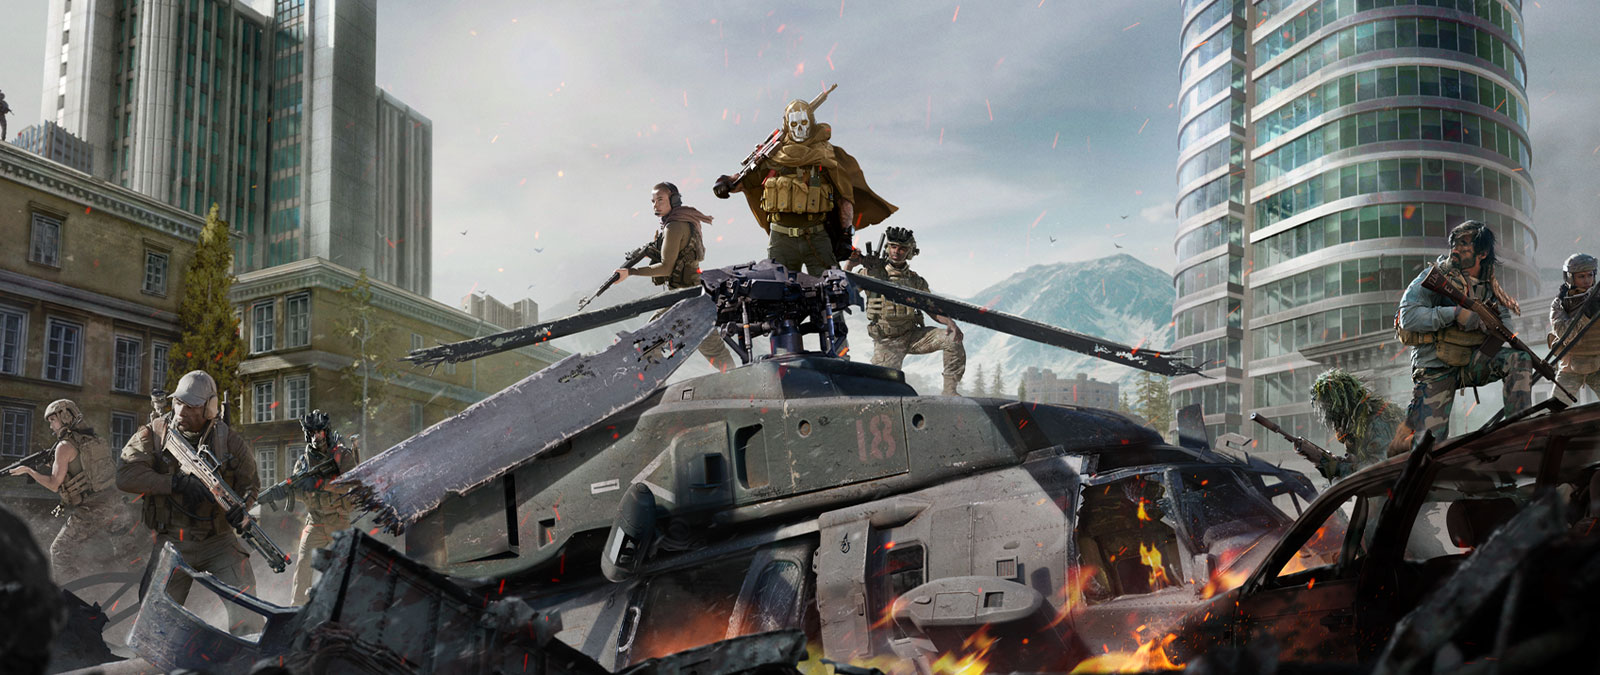 Ghost из Call of Duty: Modern Warfare в маске с черепом и маскировочном снаряжении на крыше разбившегося вертолета в окружении нескольких персонажей